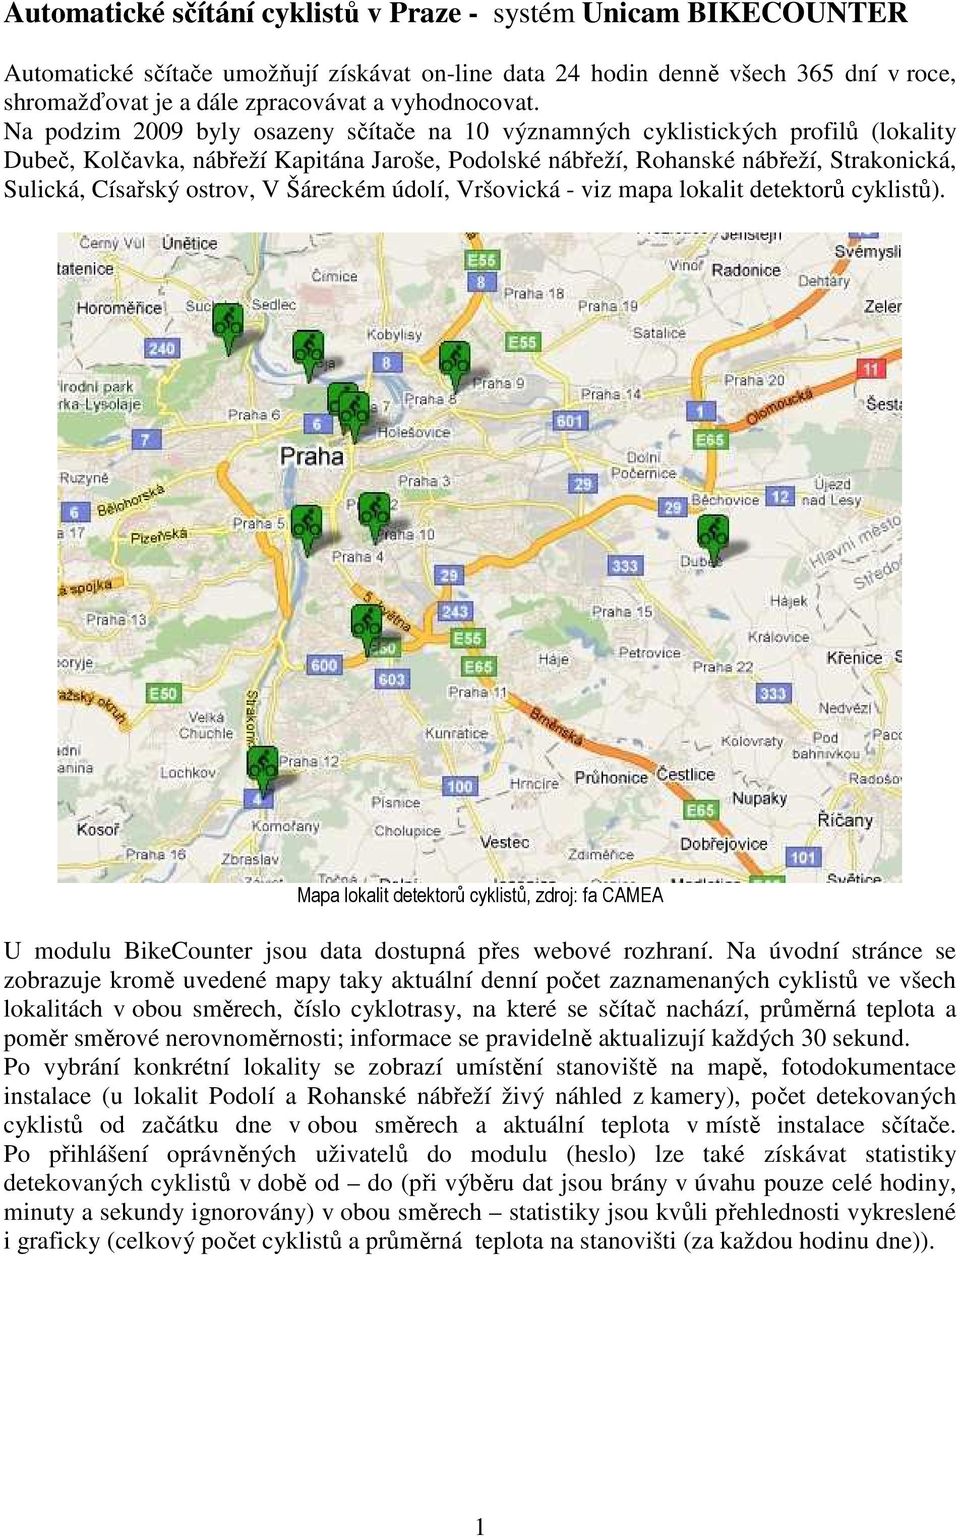 Na podzim 2009 byly osazeny sčítače na 10 významných cyklistických profilů (lokality Dubeč, Kolčavka, nábřeží Kapitána Jaroše, Podolské nábřeží, Rohanské nábřeží, Strakonická, Sulická, Císařský